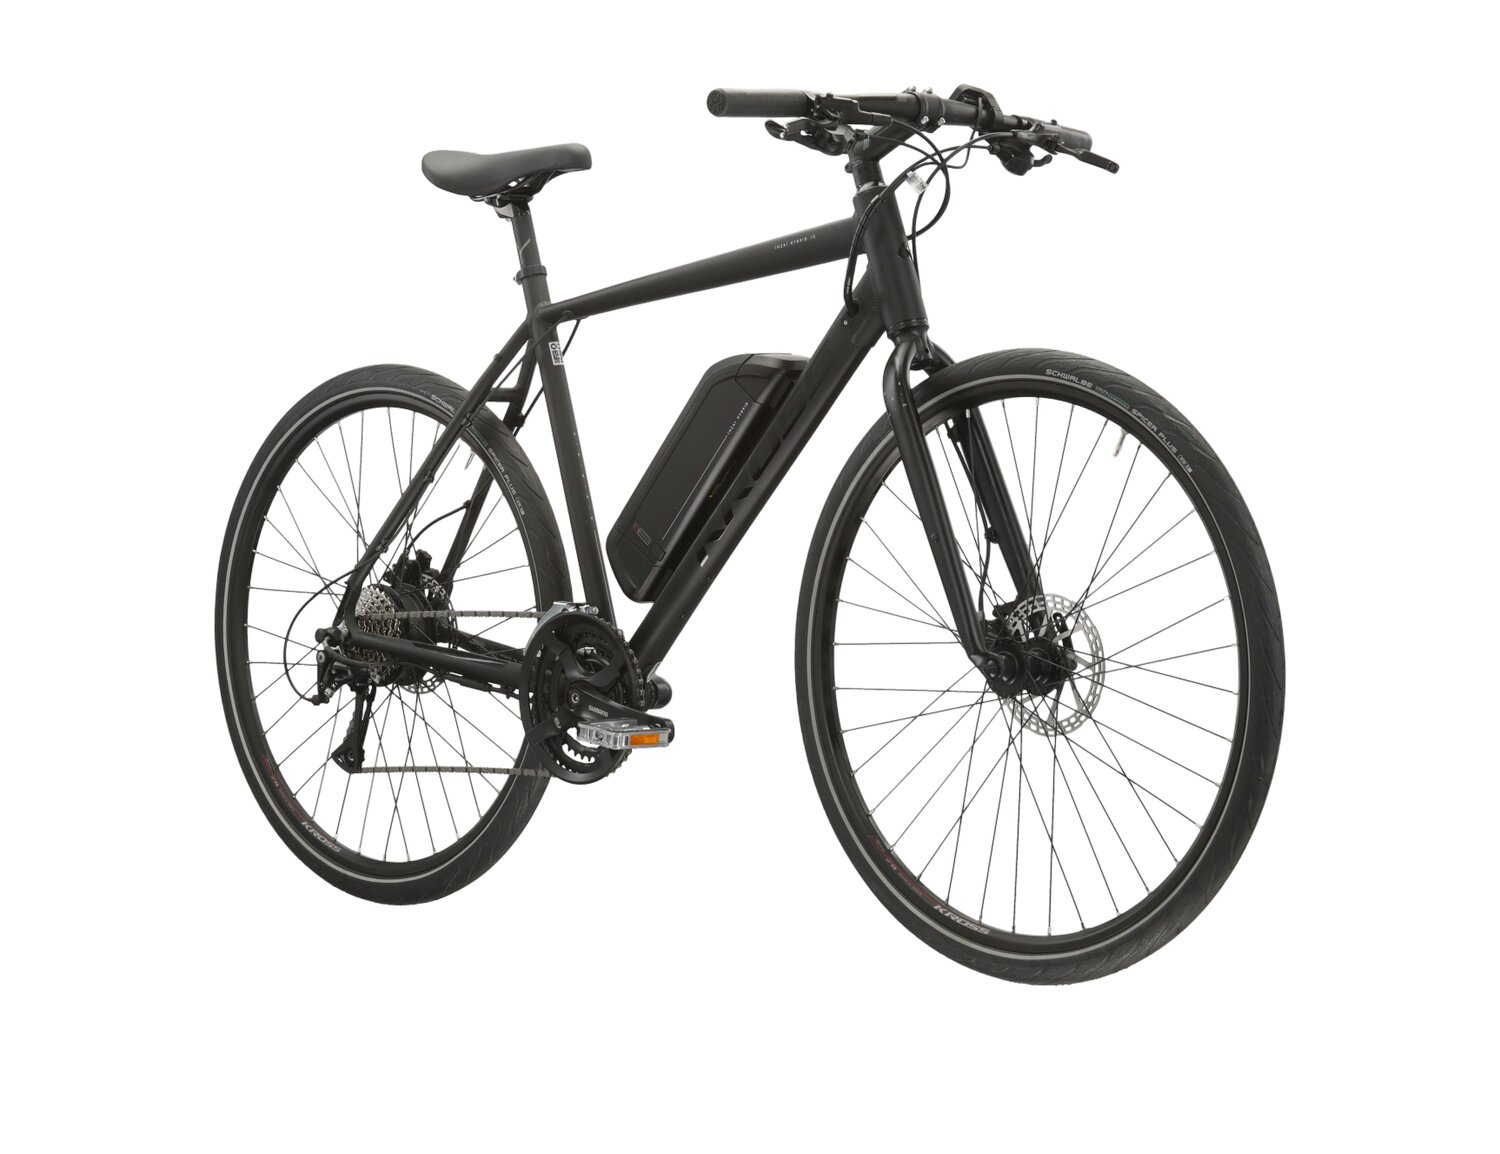  Elektryczny rower miejski KROSS Inzai Hybrid 1.0 522 Wh na aluminiowej ramie w kolorze czarnym wyposażony w osprzęt Shimano i napęd elektryczny Bafang